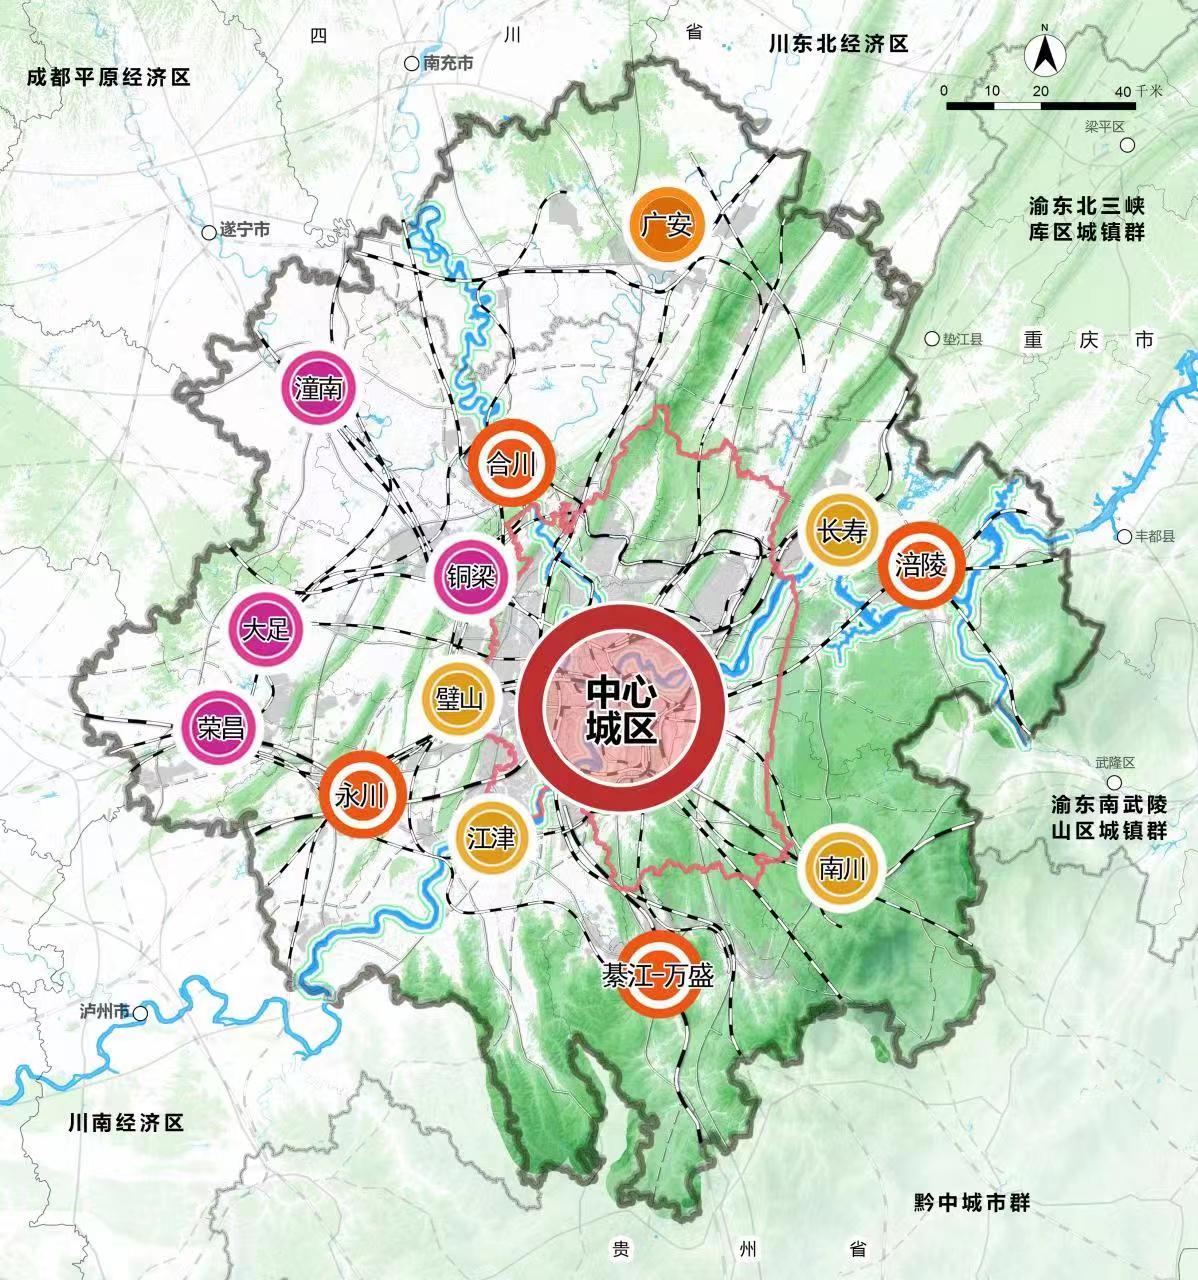 重庆市人民政府 四川省人民政府 关于印发重庆都市圈发展规划的通知